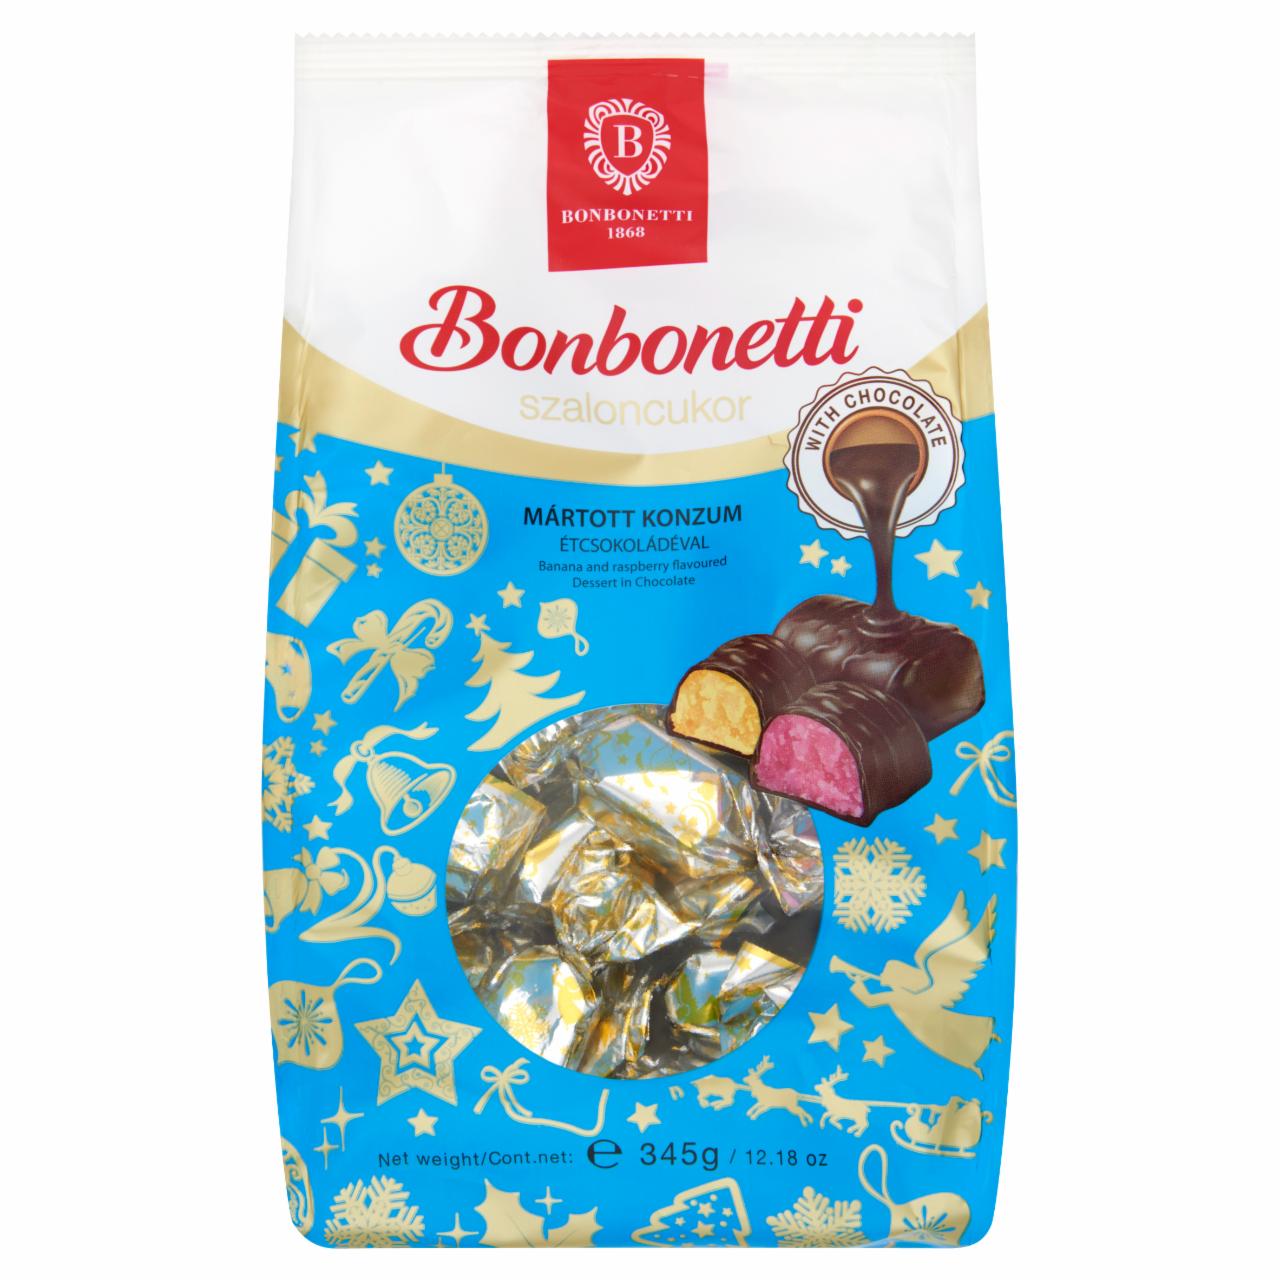 Képek - Bonbonetti mártott konzum szaloncukor étcsokoládéval 345 g